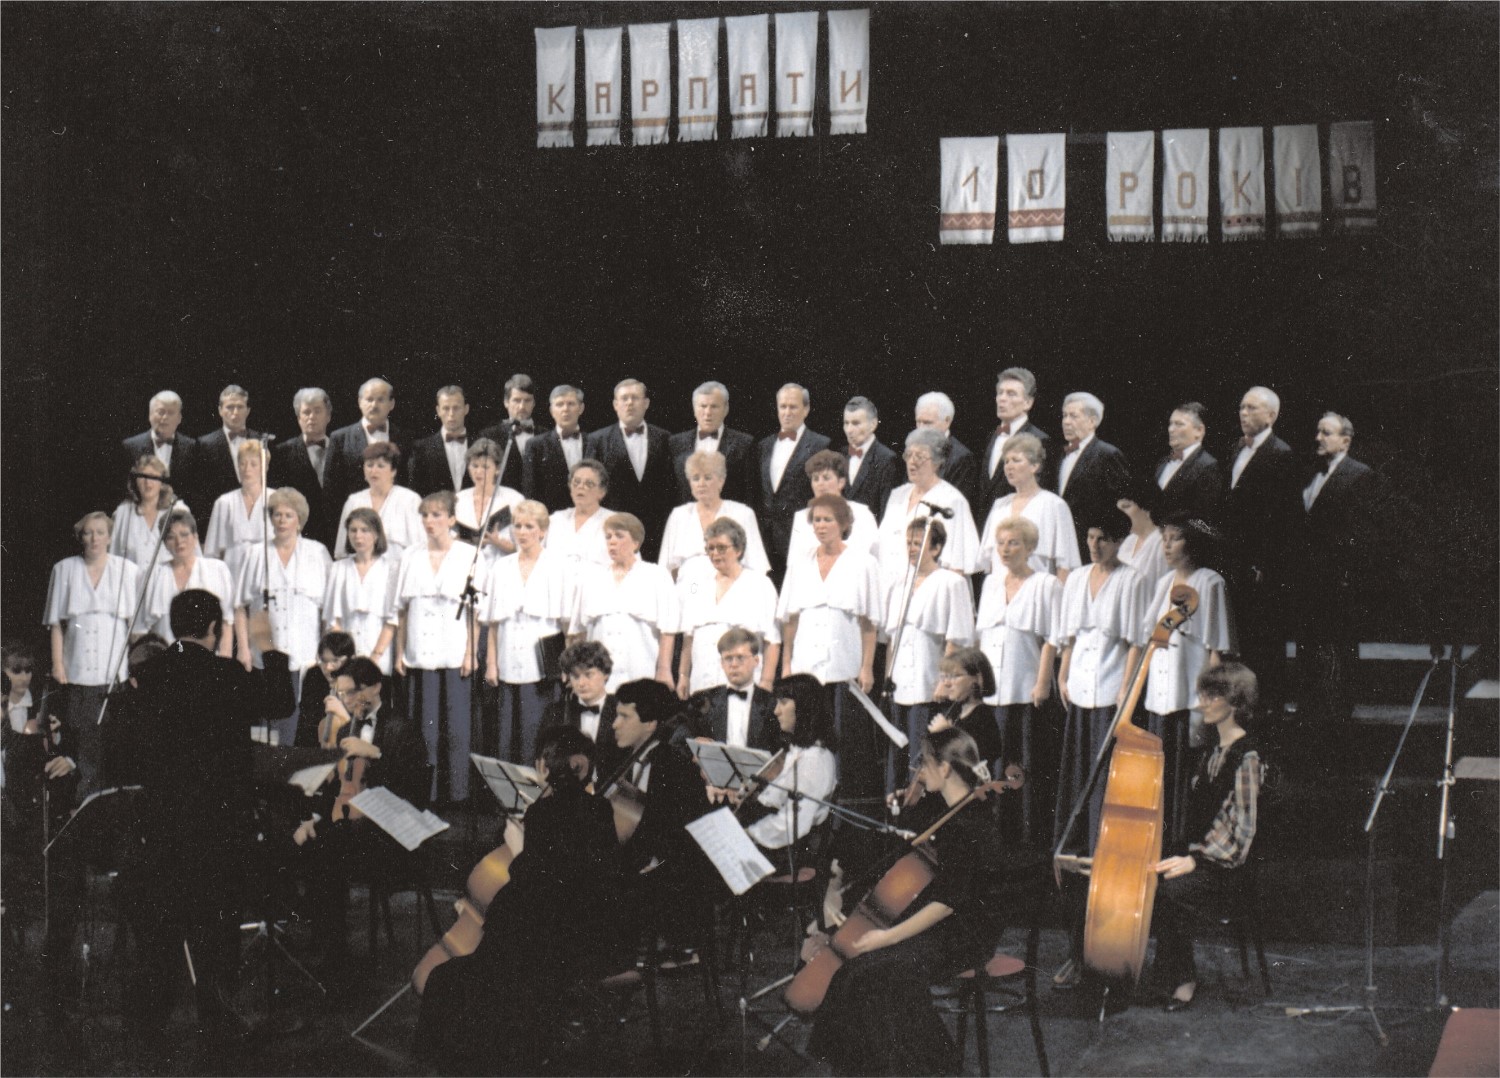 35 років відзначає хор "Карпати" у Кошицях (ФОТО)